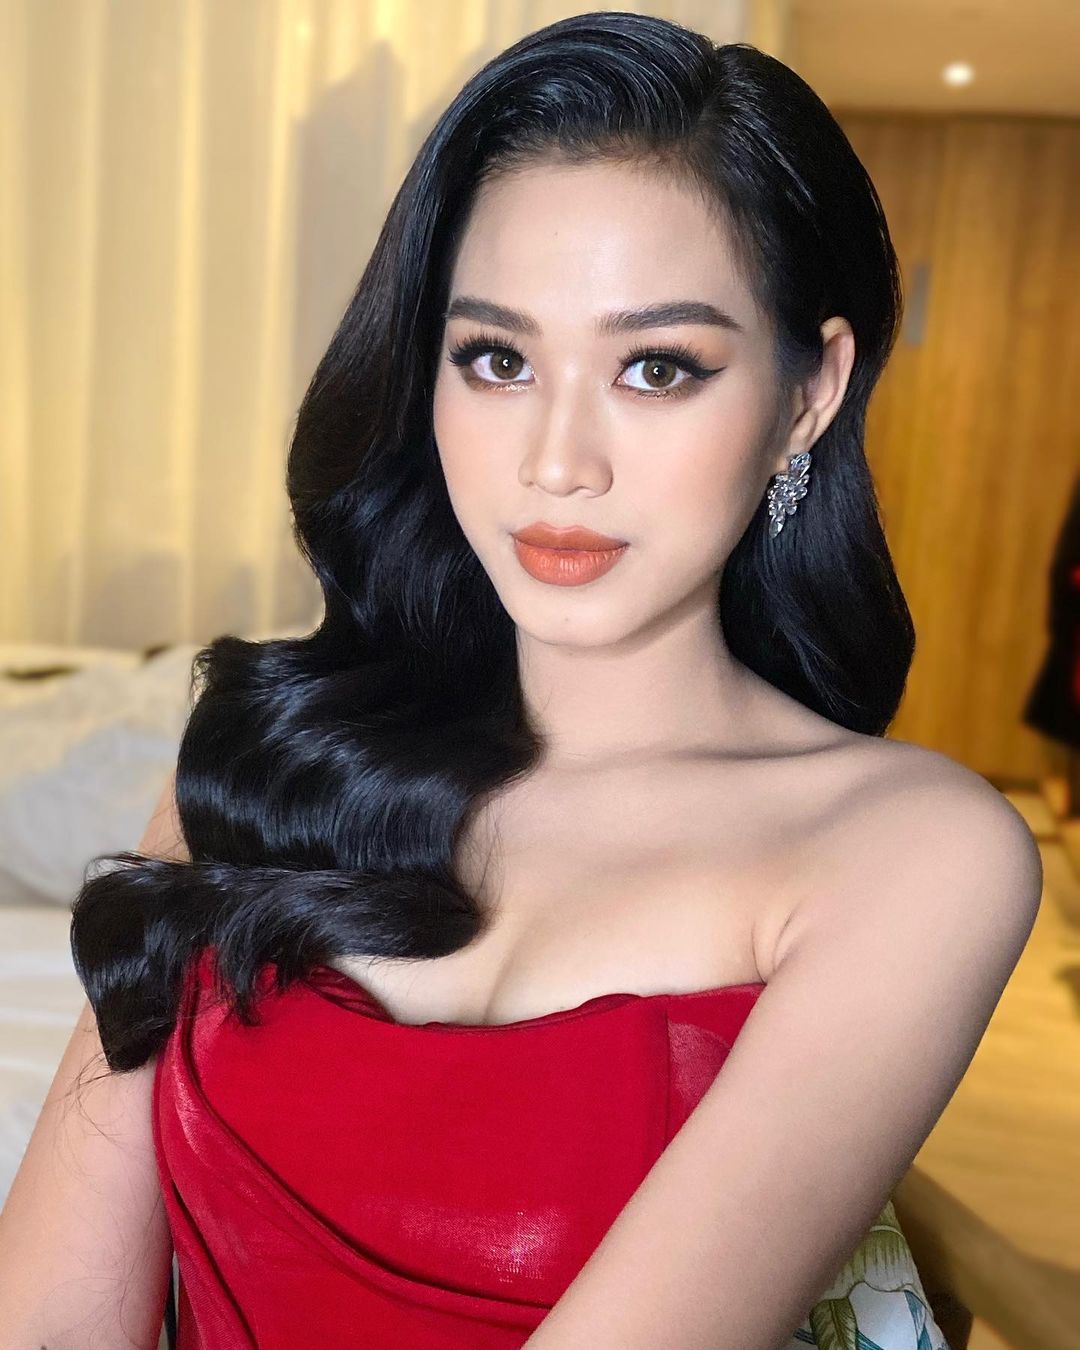 Hoa hậu Đỗ Thị Hà cũng có "điểm chết" vóc dáng khó che giấu - 6